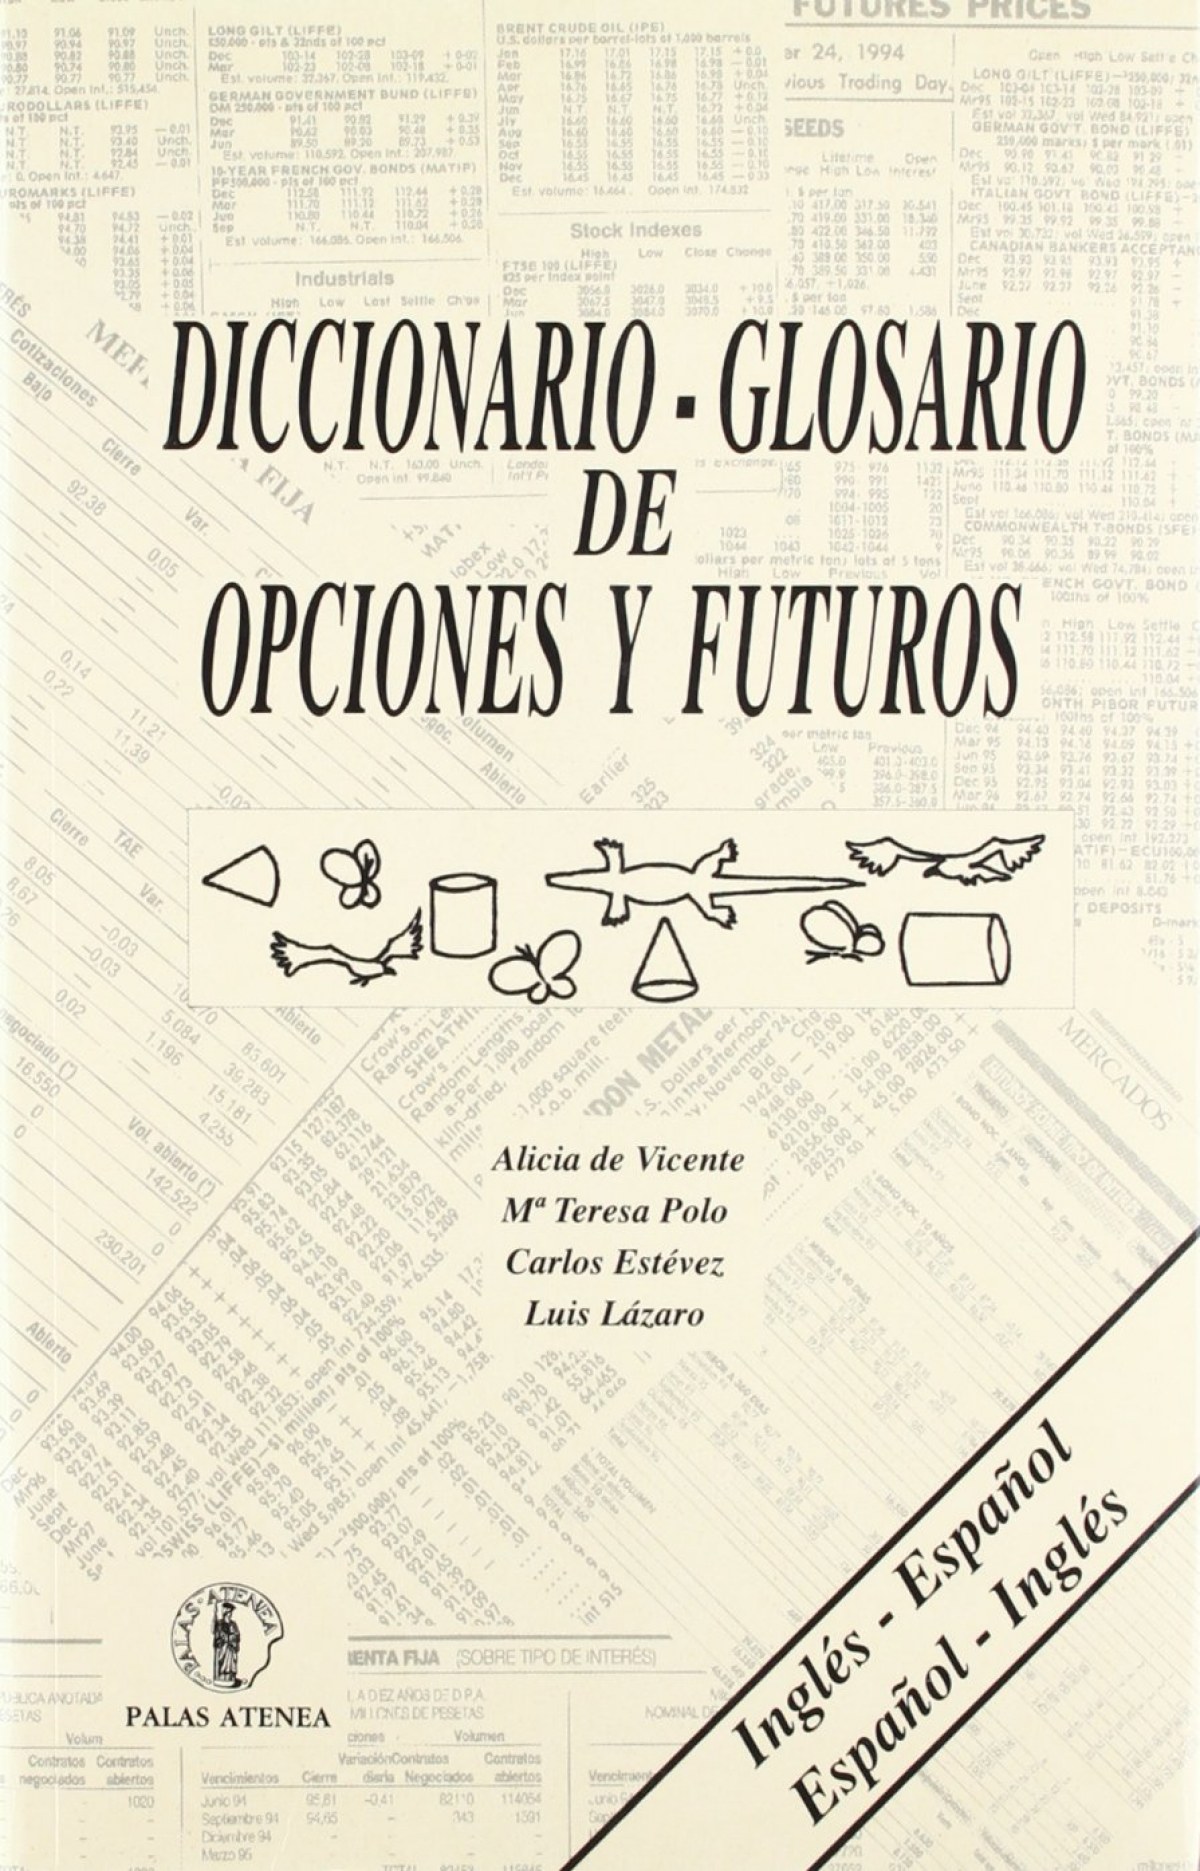 Diccionario-glosario de opciones y futuros - Vicente/Polo/Estevez/Lazaro